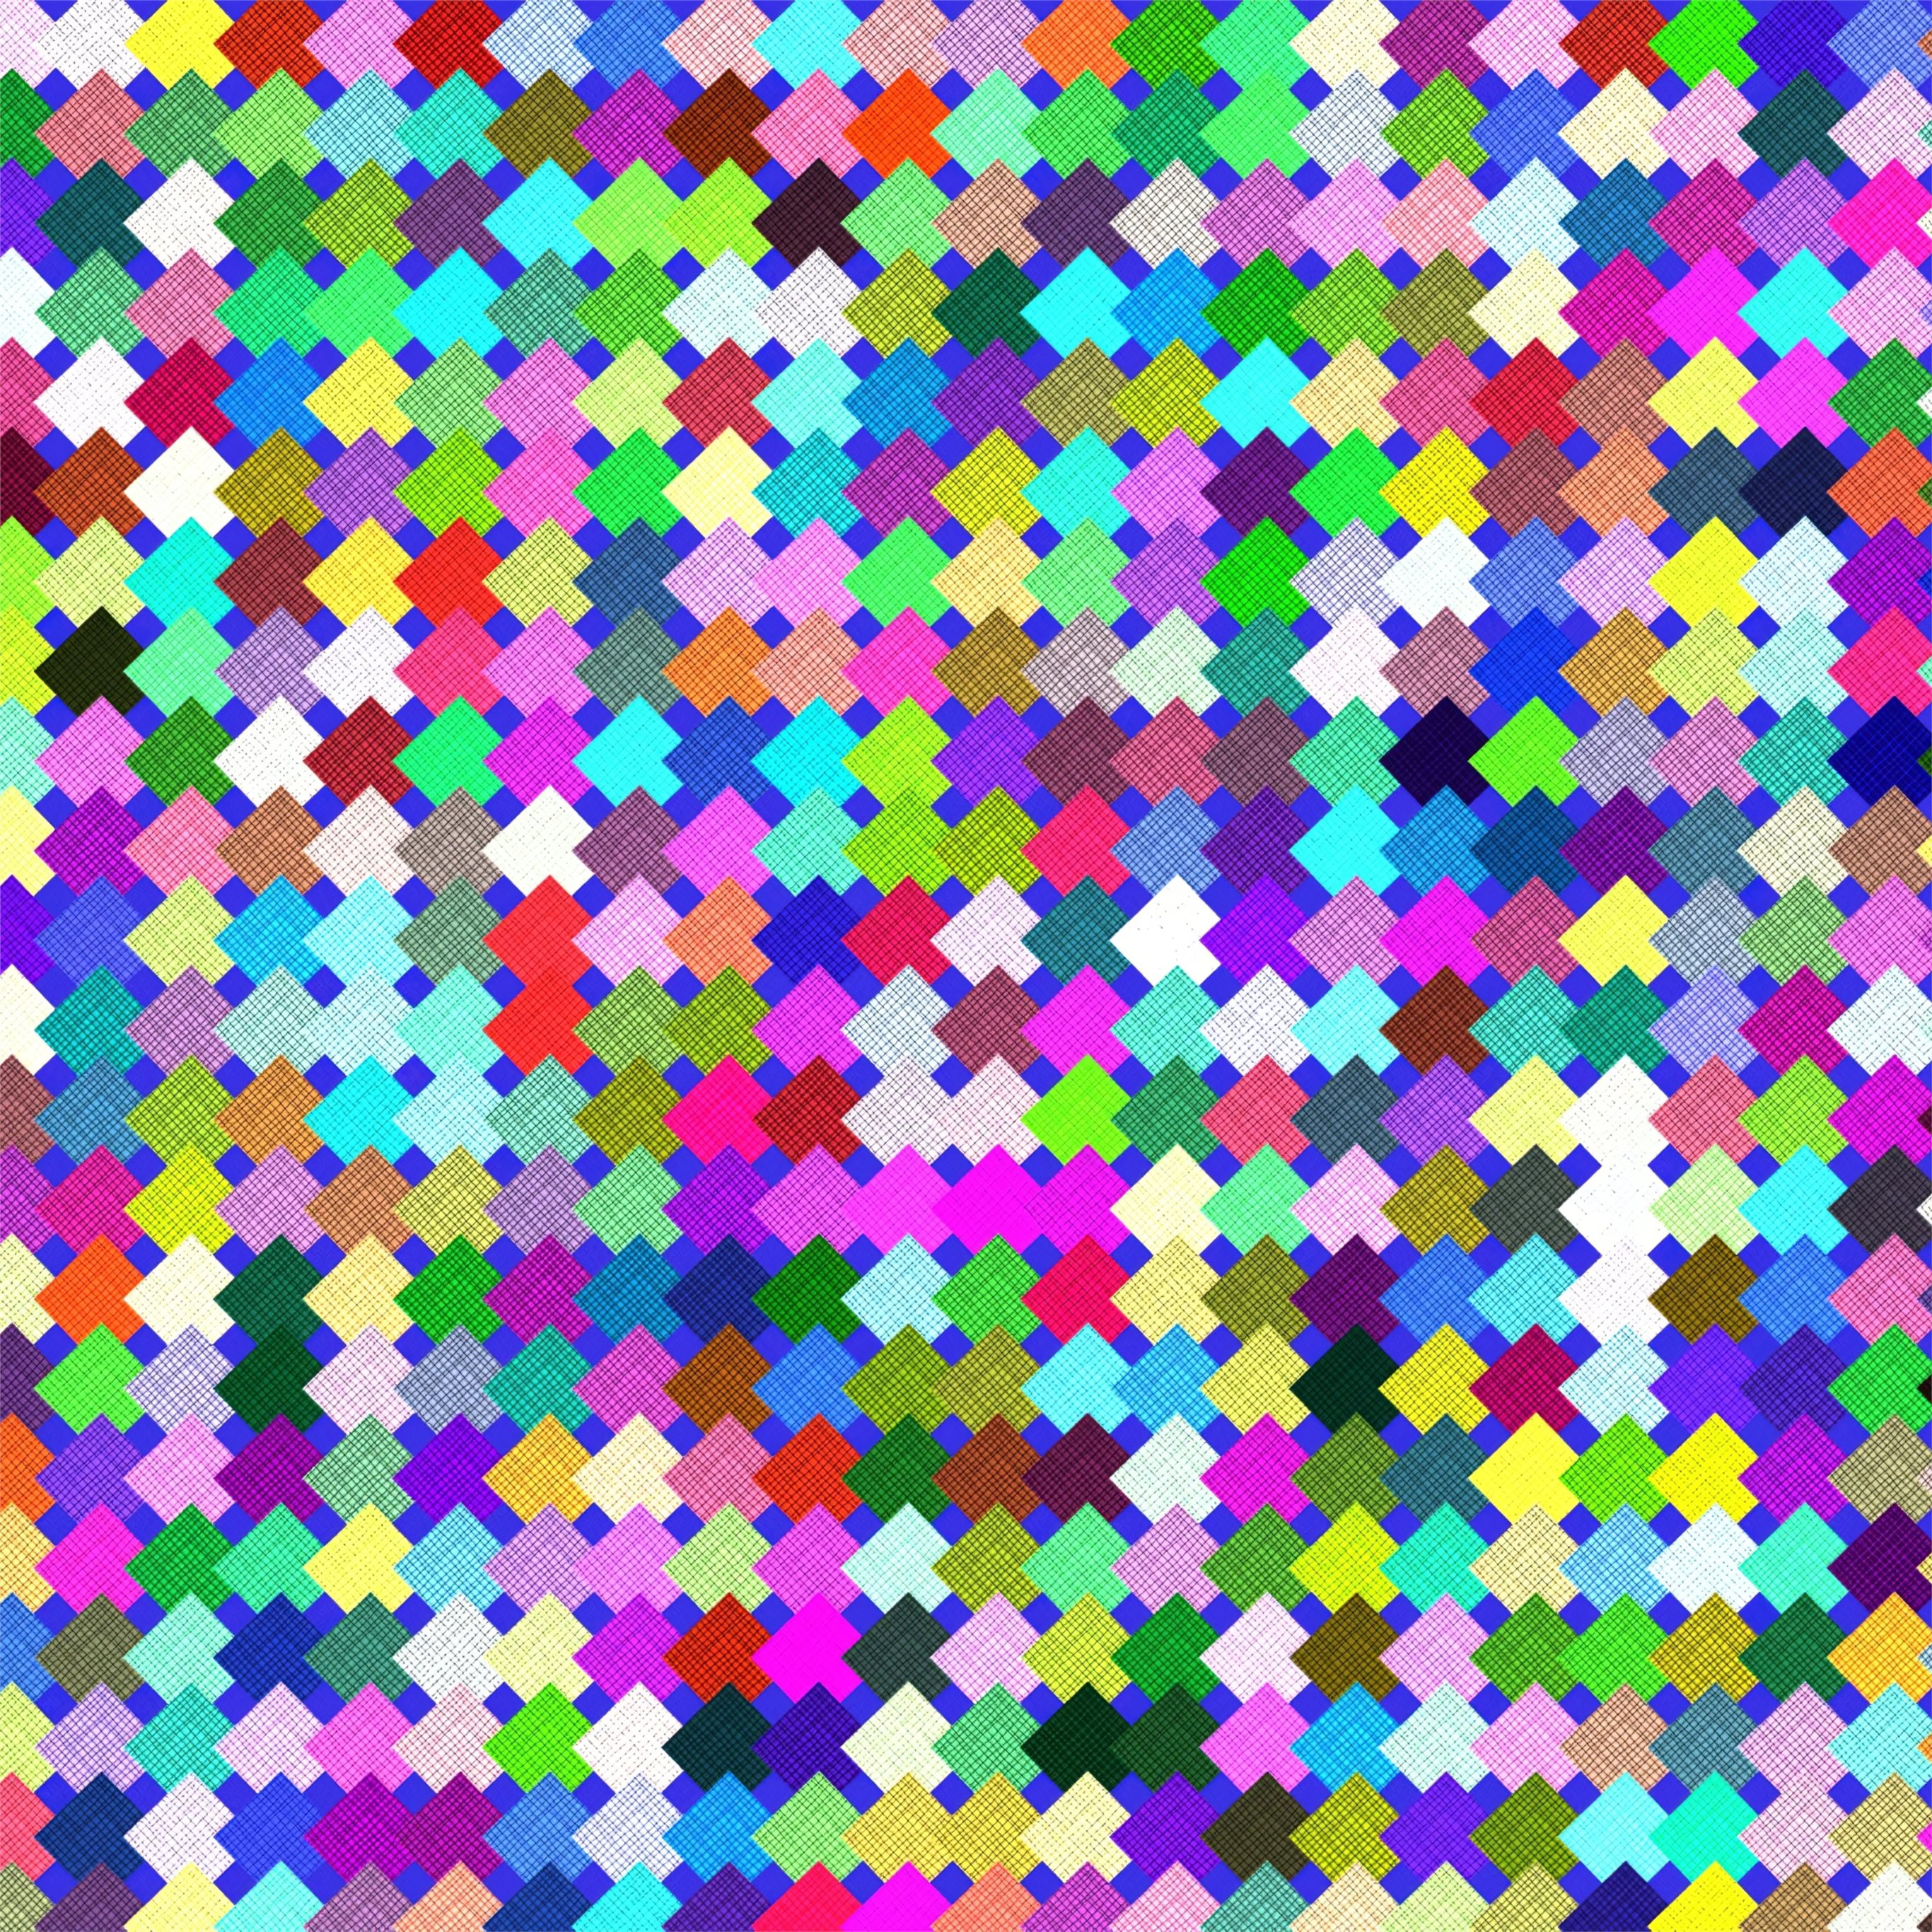 Маленький цветные квадратики. Разноцветные квадратики. Много разноцветных квадратиков. Фон из квадратиков. Разноцветные квадратики фон.